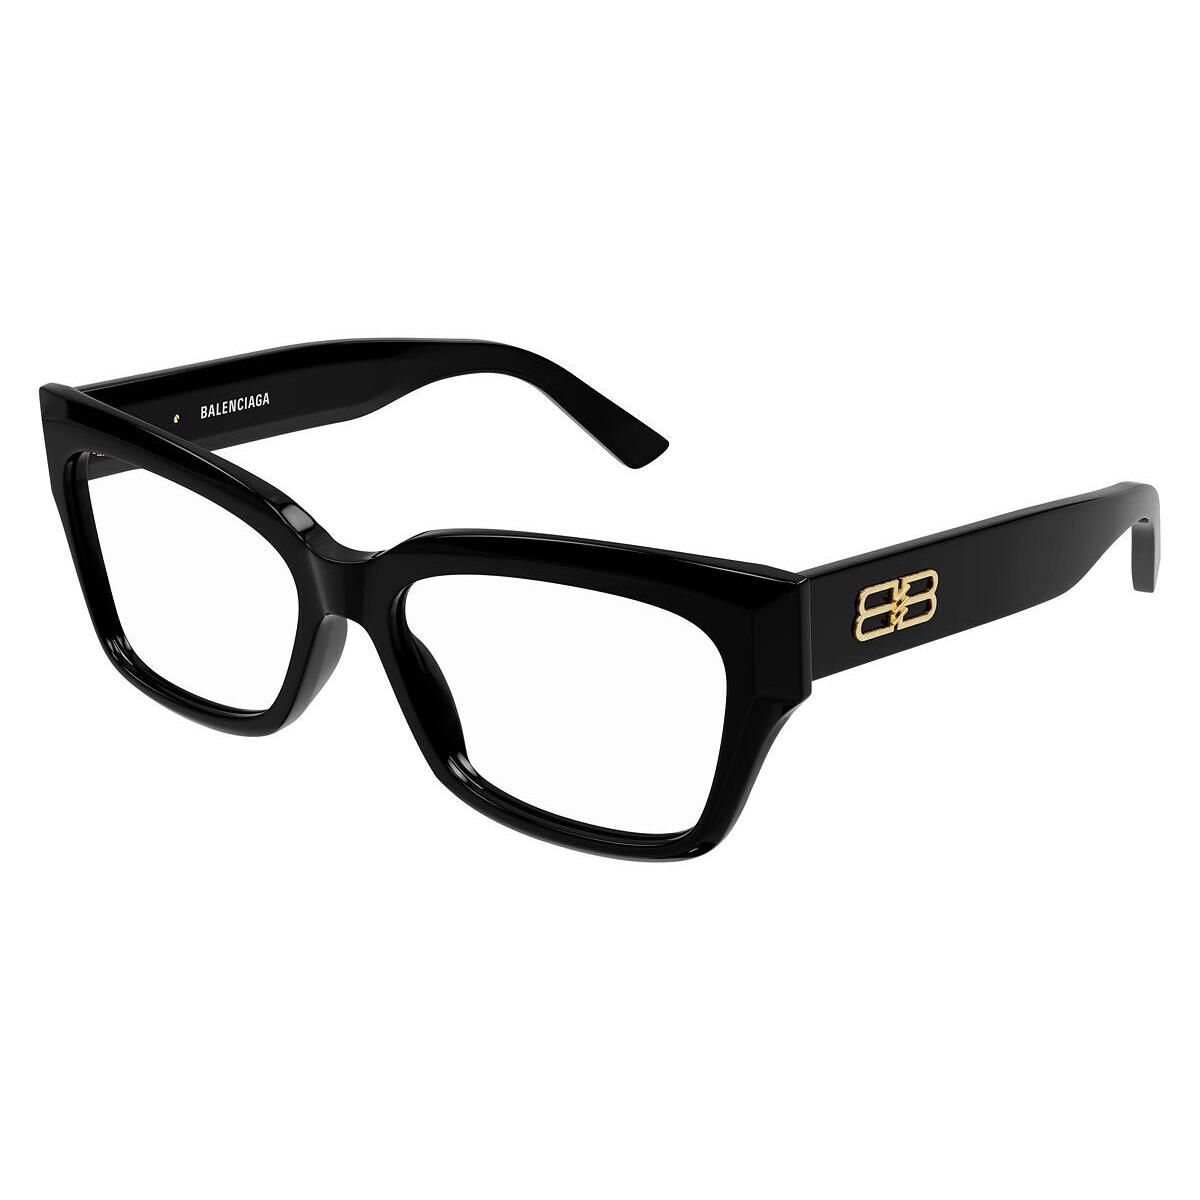 Balenciaga BB0274O Eyeglasses Women Black Square 55mm